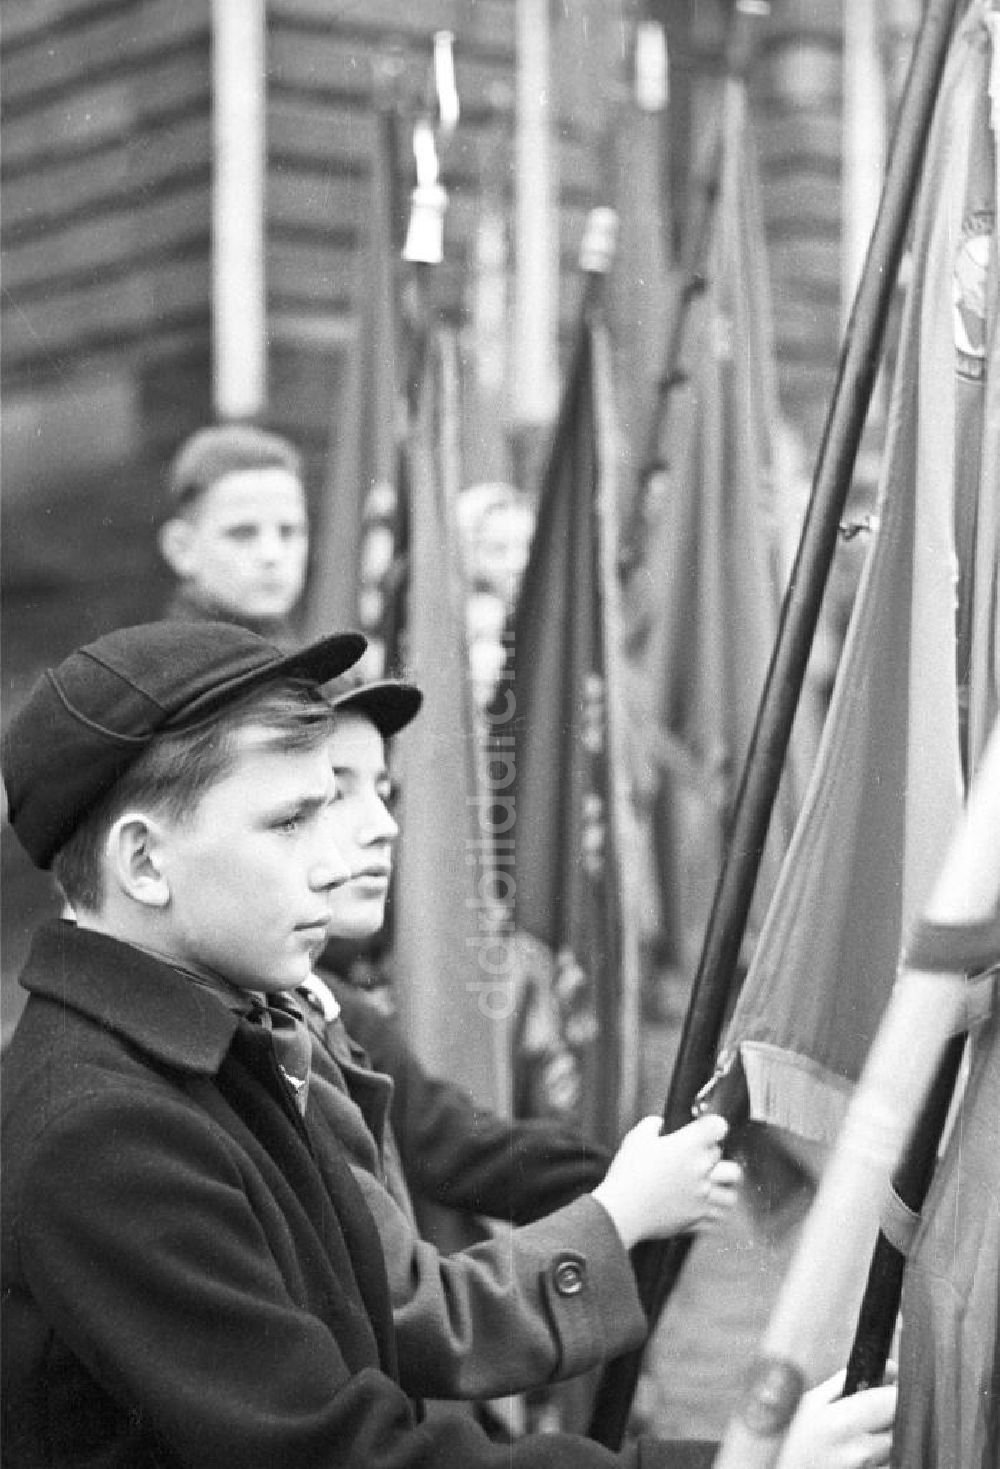 DDR-Bildarchiv: Leipzig - Junge bei einer Veranstaltung zum 1. Mai, Leipzig 1960